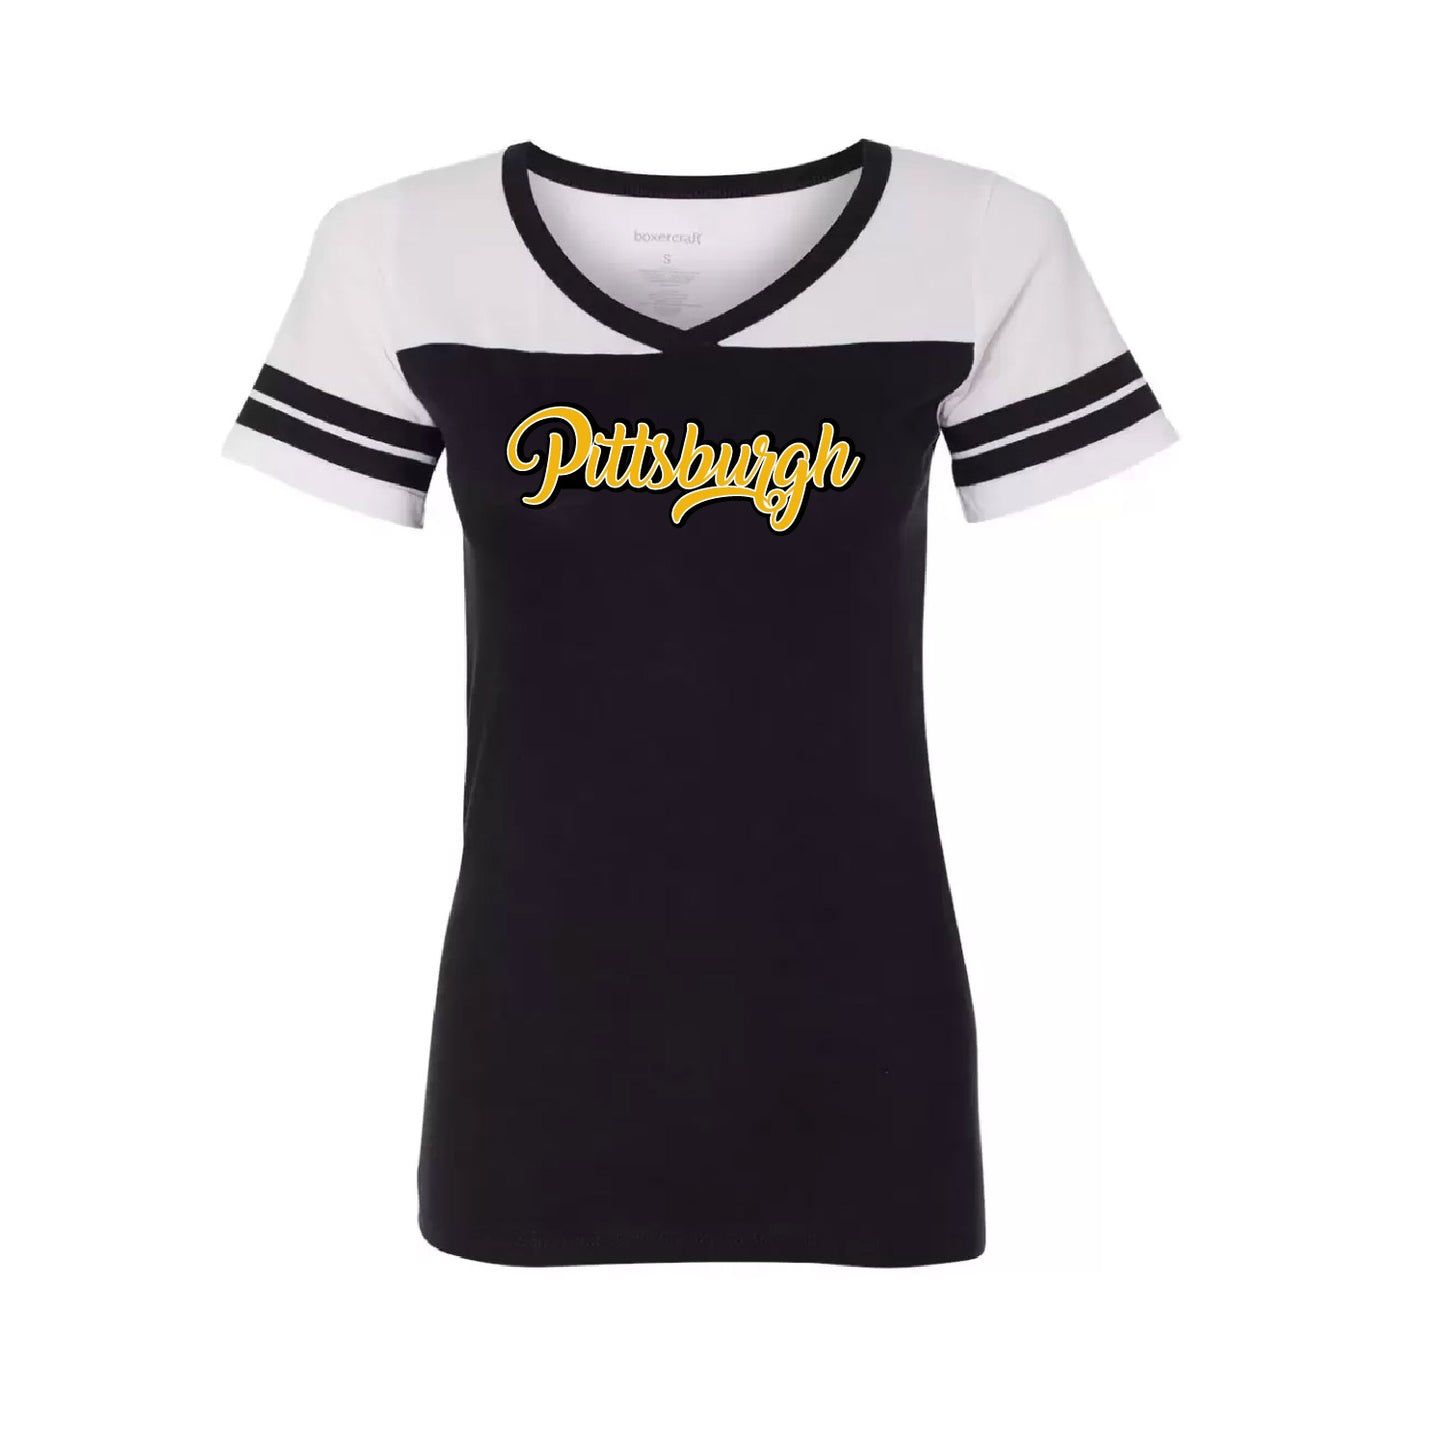 Evil Lizard Online: Pittsburgh Boxercraft Women/Girls Powder Puff T-Shirt